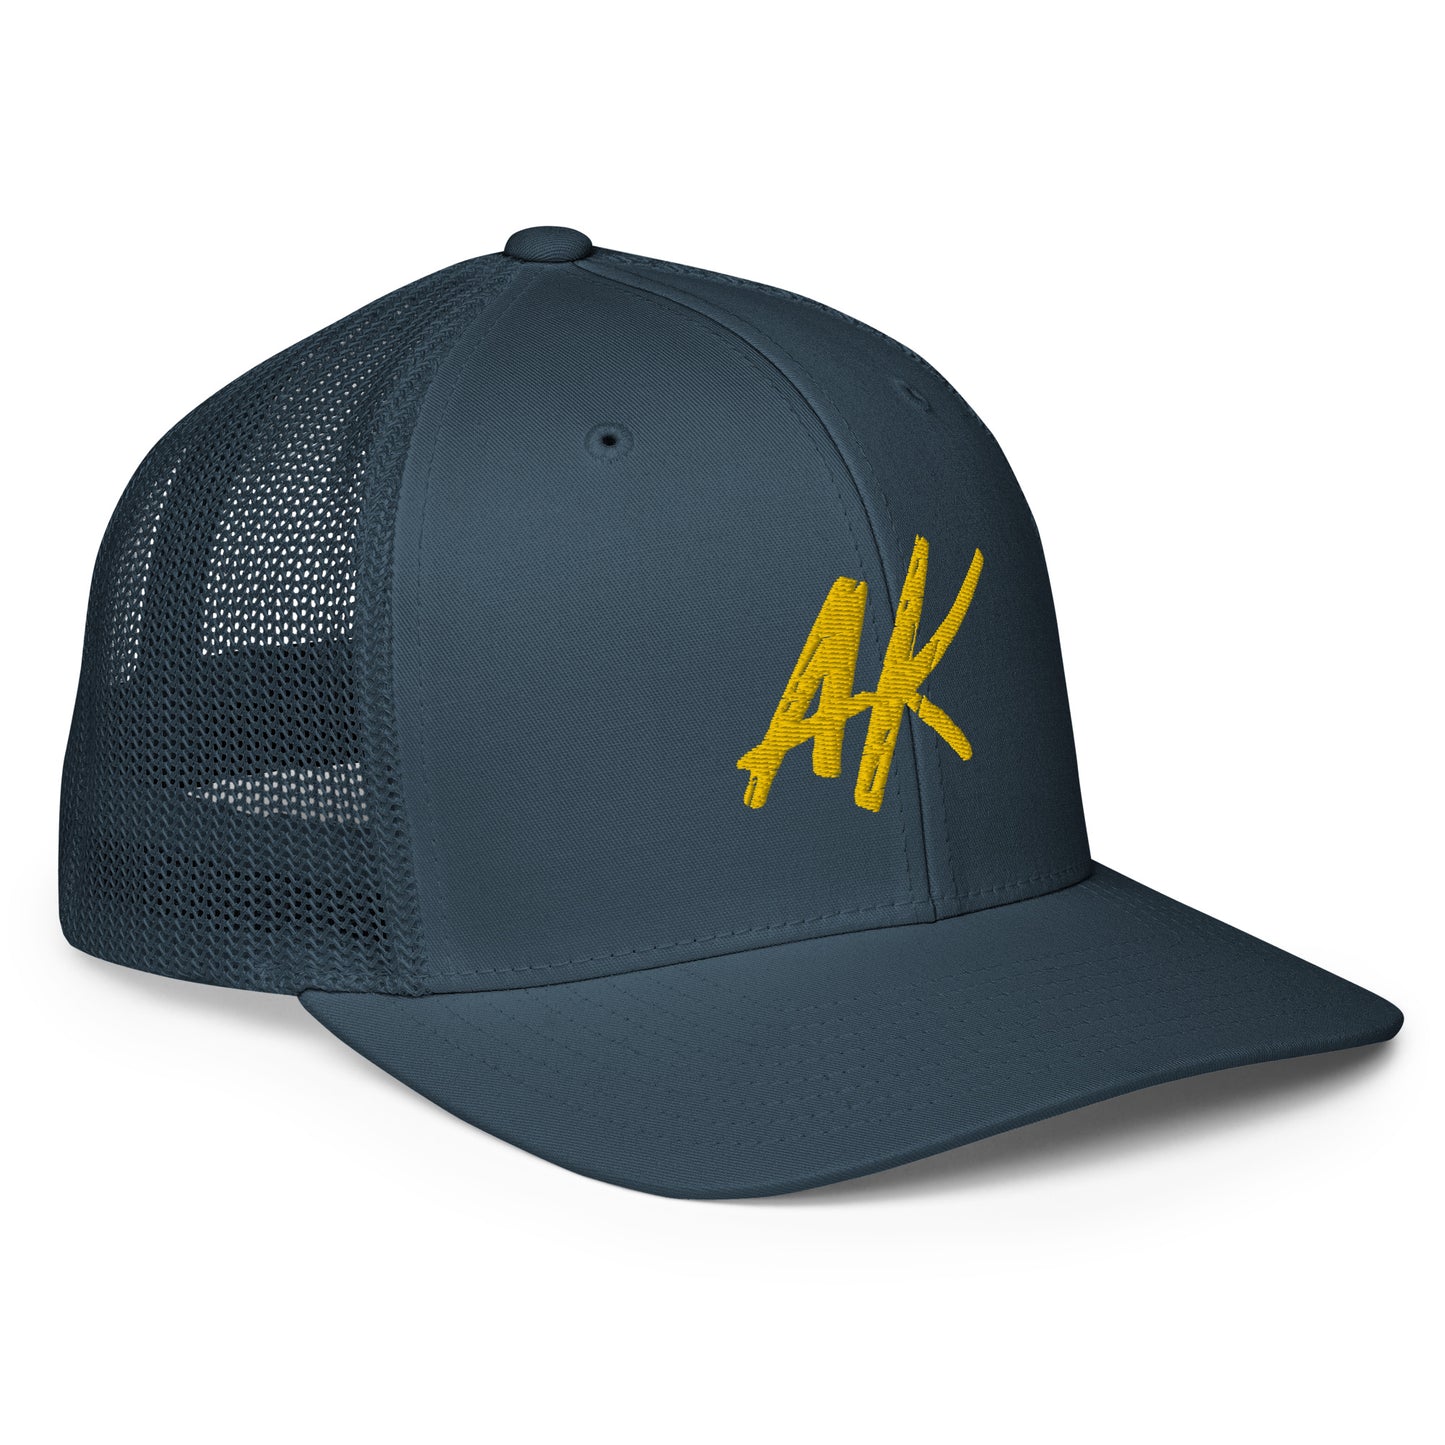 AK Closed-Back Trucker Cap (gold)